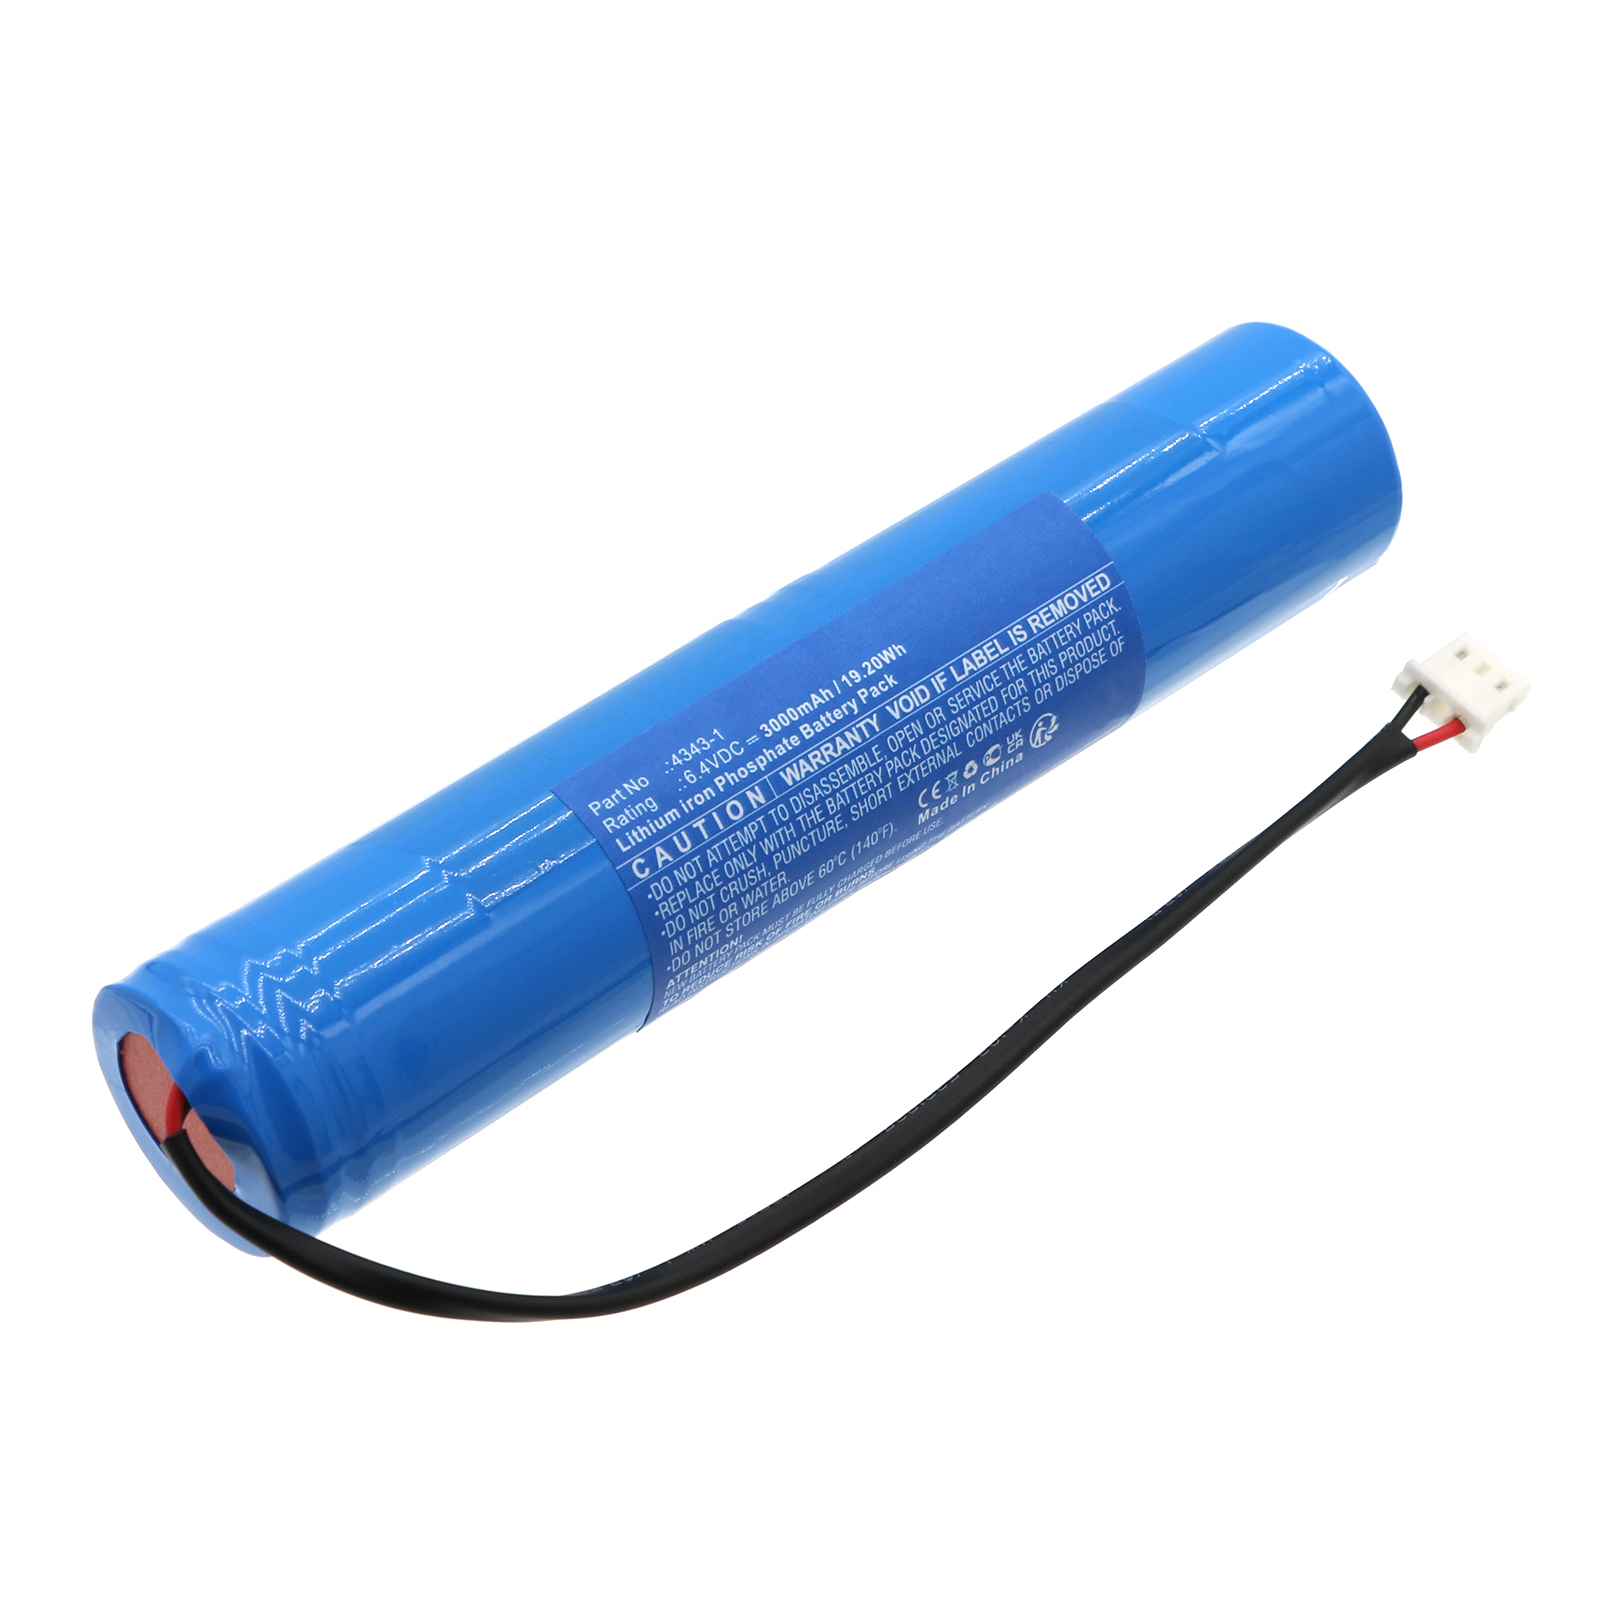 Synergy Digital Emergency Lighting Battery, Compatible with DOTLUX 4343-1 Emergency Lighting Battery (LiFePO4, 6.4V, 3000mAh)